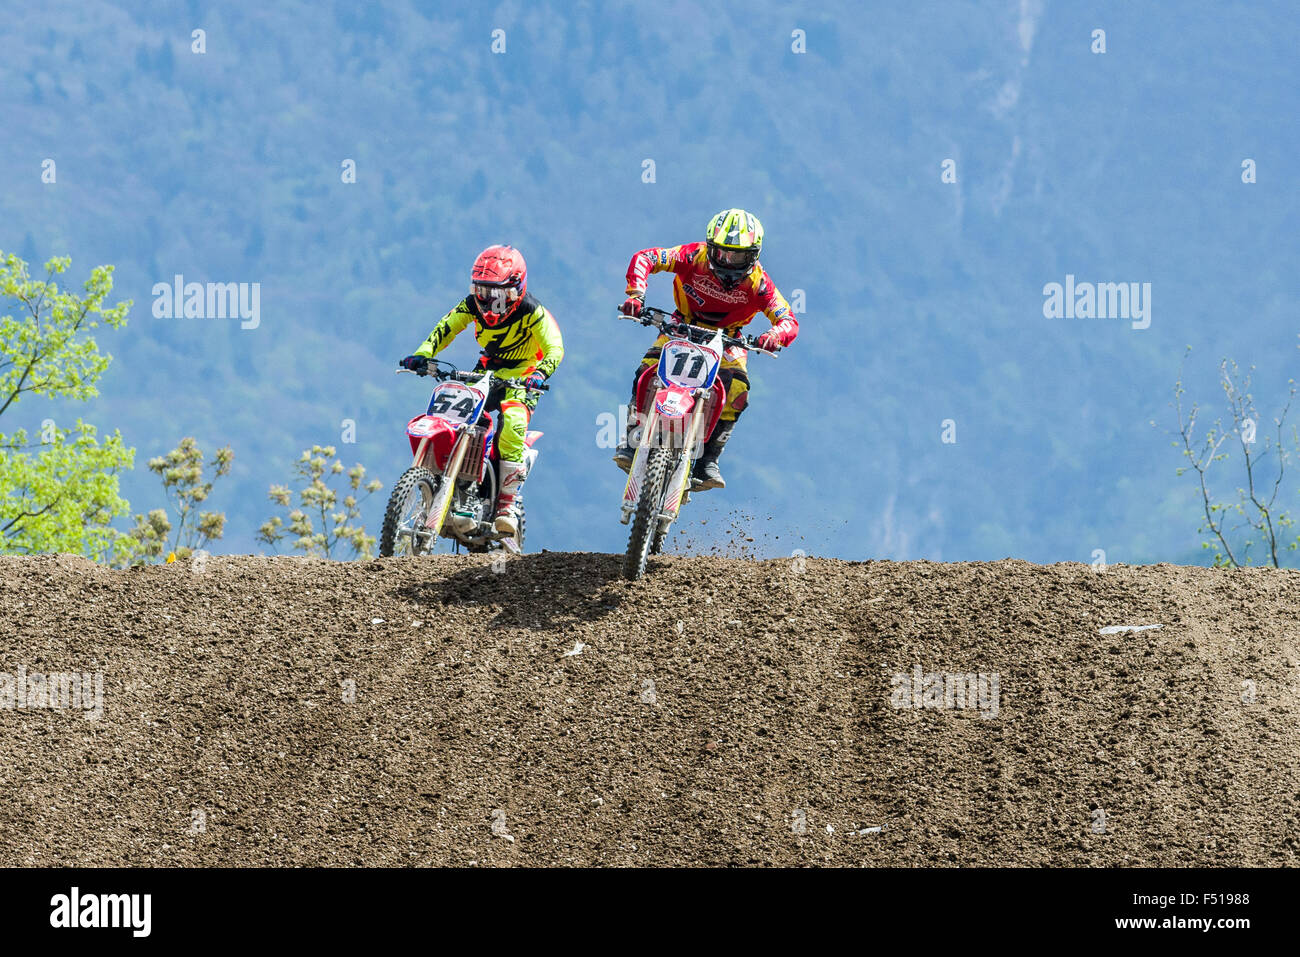 Zwei Motorradfahrer auf motocross Bikes sind Reiten auf einem Feldweg während des Trainings für die mxgp WM-Lauf Stockfoto